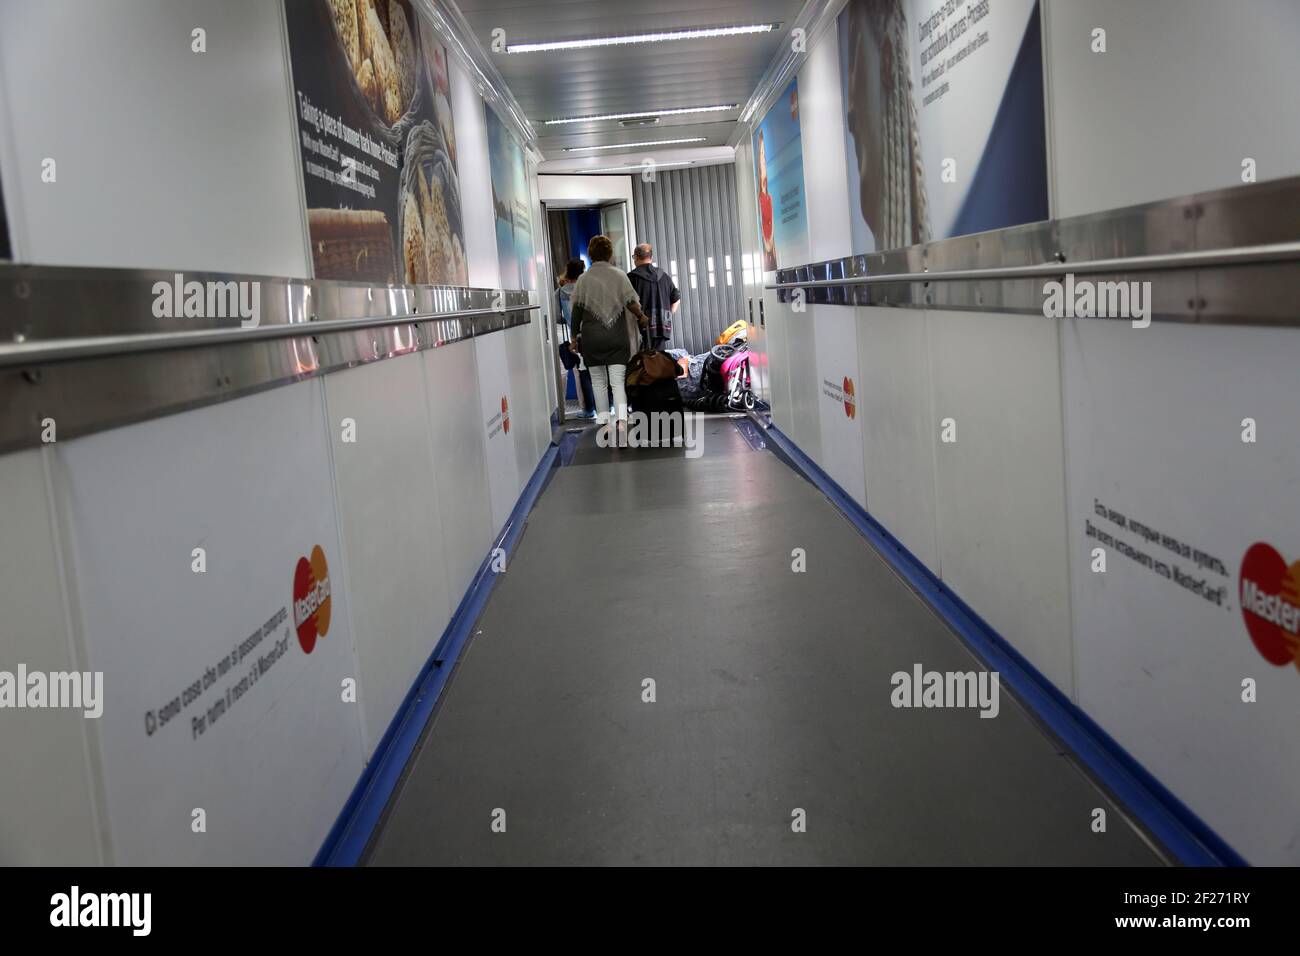 Heathrow Airport England Passagiere auf Jet Bridge Boarding Flugzeug mit Gepäck im Frachtraum - Gepäck und Kinderwagen In Haufen auf dem Boden Stockfoto